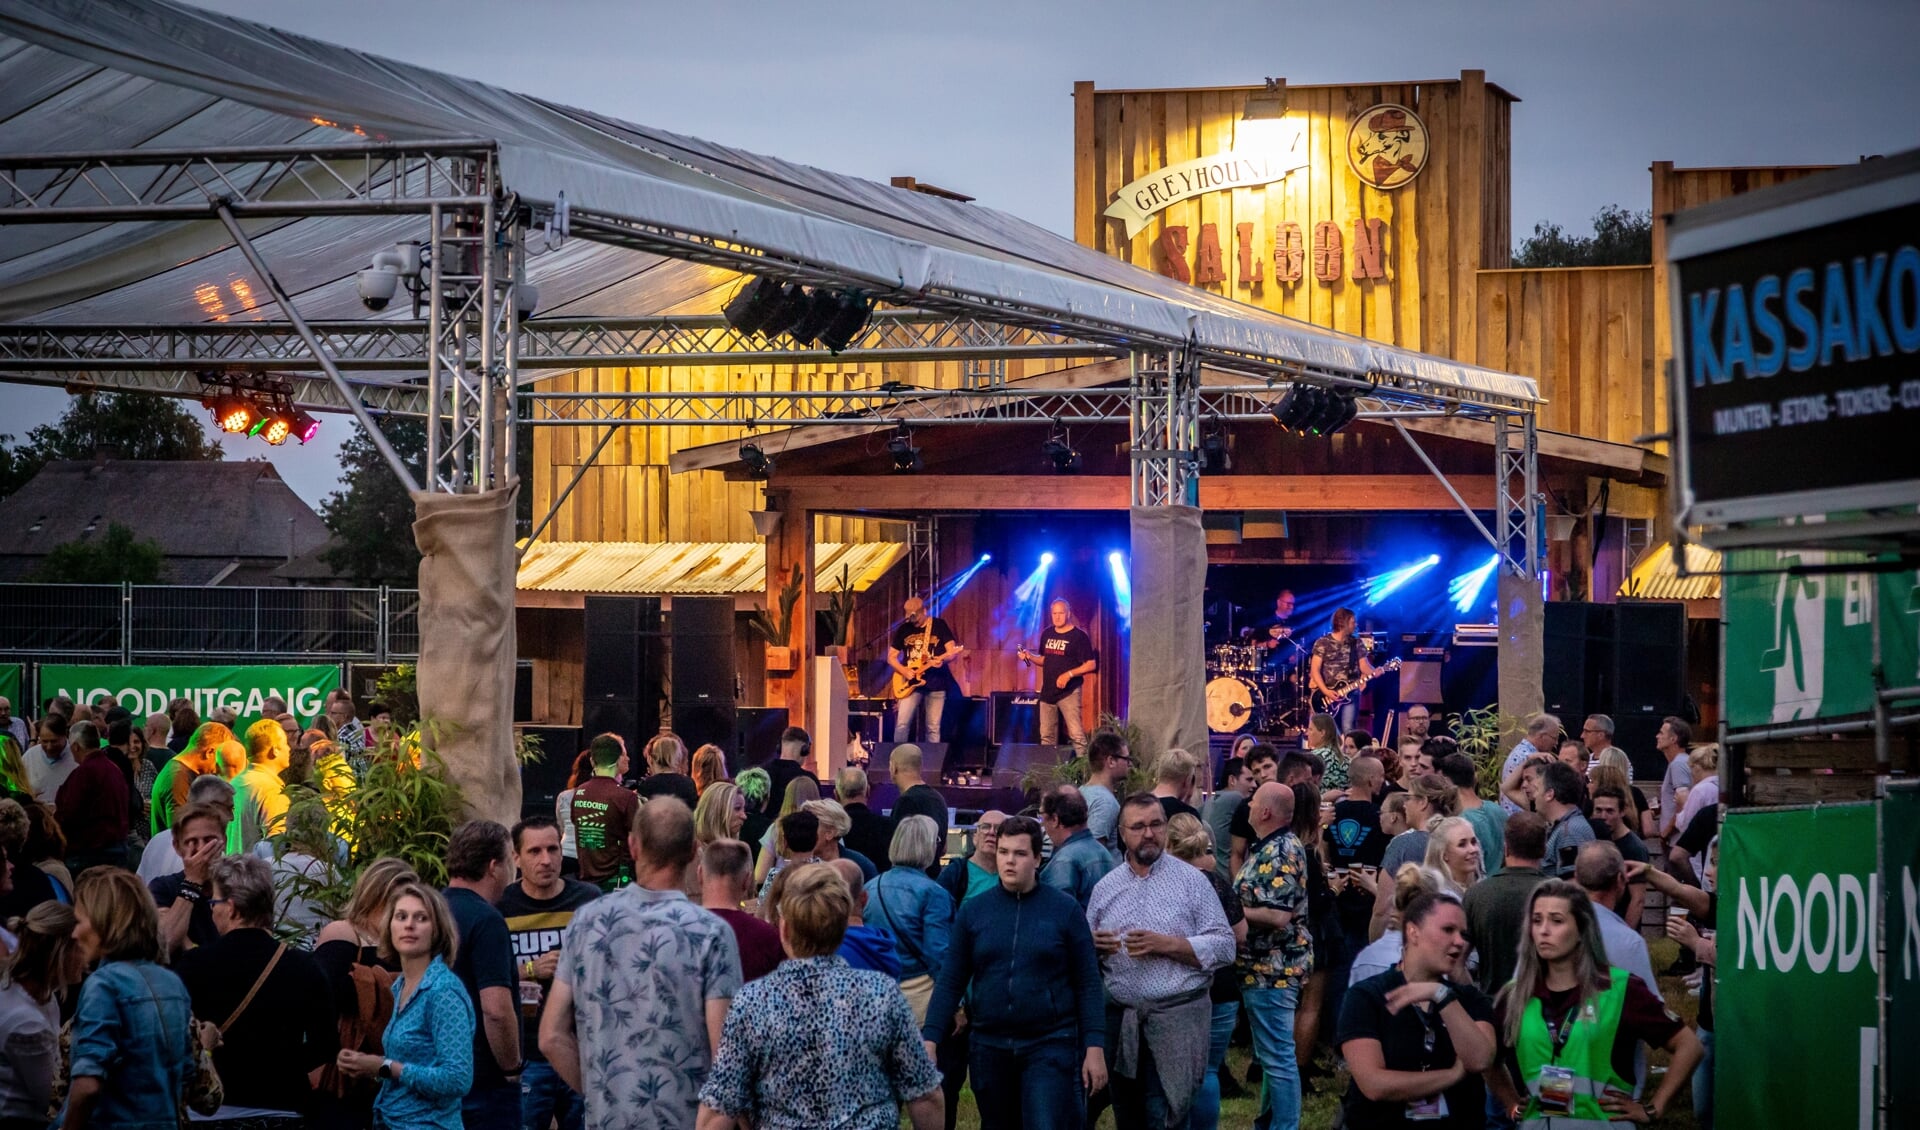 Het festivalterrein van Reurpop kent dit jaar een nieuwe frisse indeling, met een tweetal totaal vernieuwde podiums. Foto: Joris Telders